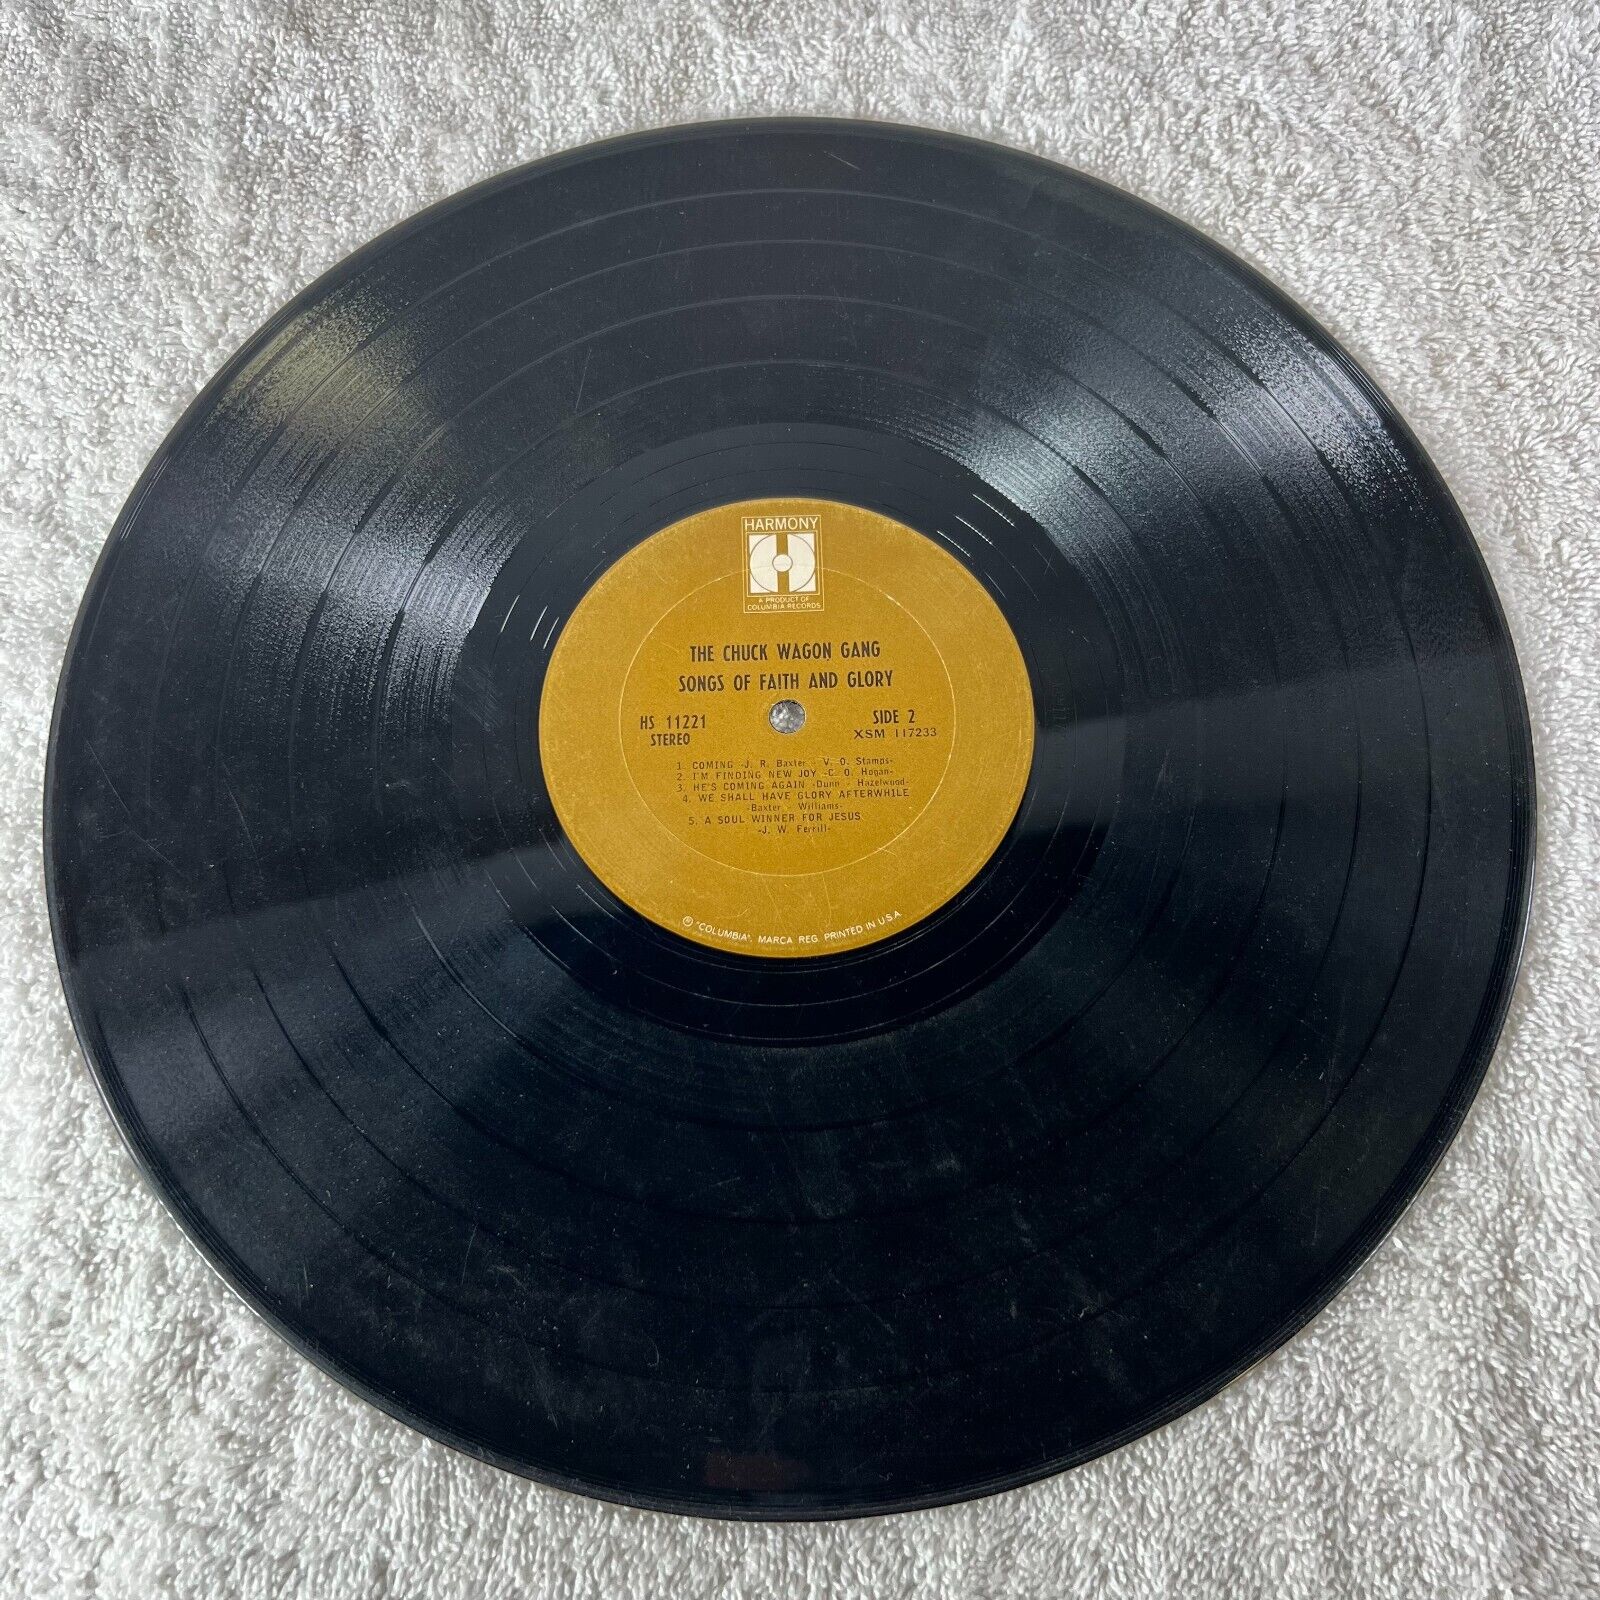 THE CHUCK WAGON GANG - Songs of Faith and Glory Vinyl LP HARMONY Shrink 1967